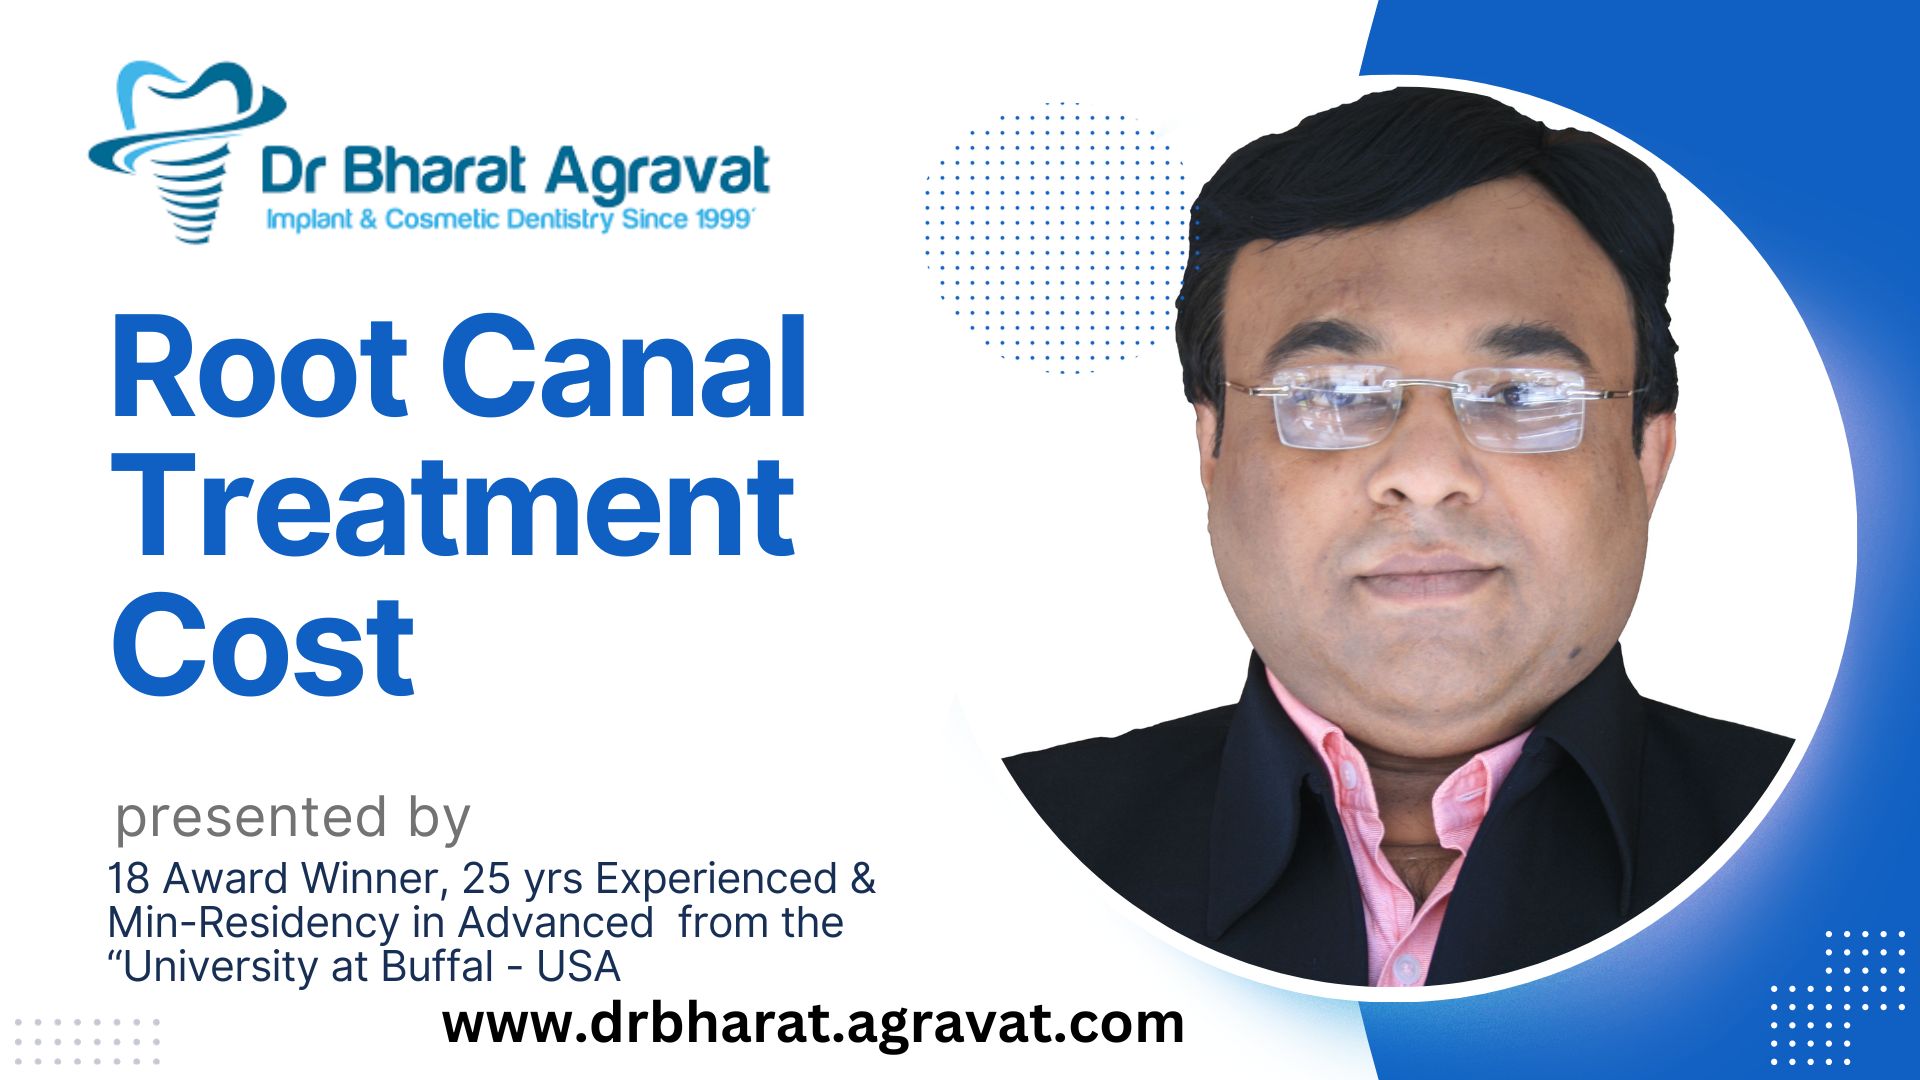 Nagbalik-tanaw si Dr. Bharat Agravat Endodontics Centre sa Mura at Maaasahang Tratamento ng Ugat-Dilaw